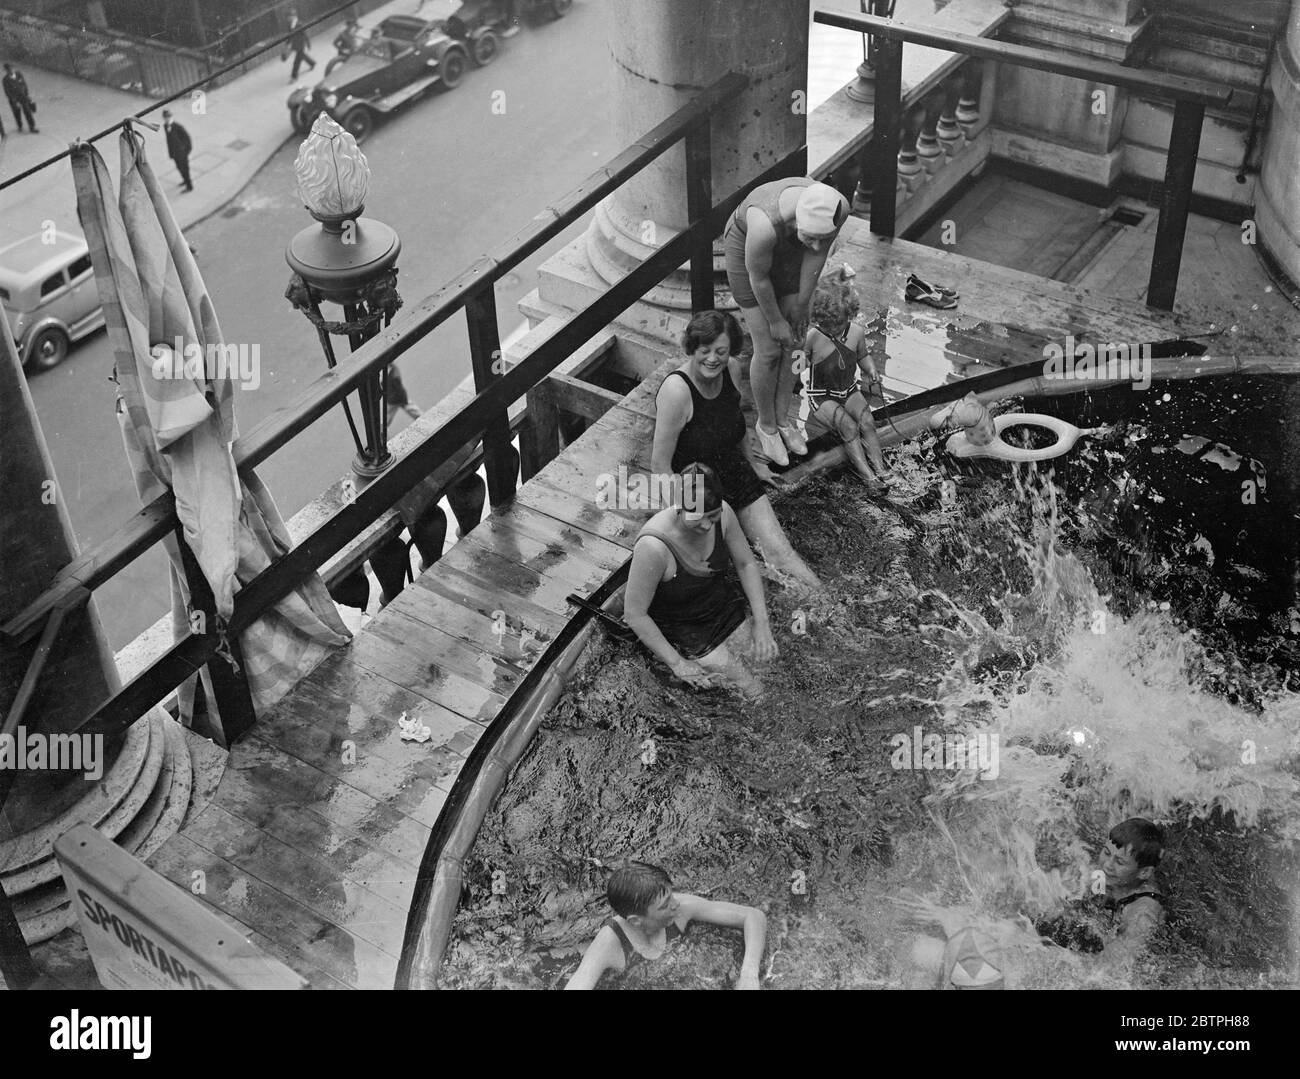 Baden über Piccadilly Verkehr. Auf dem terrassenbeeten Balkon des Piccadilly Hotels wurde ein Pool aufgestellt und die Badegäste tauchen direkt über dem Straßenverkehr ins Wasser. Badegäste im Pool über der Straße. August 1932 Stockfoto